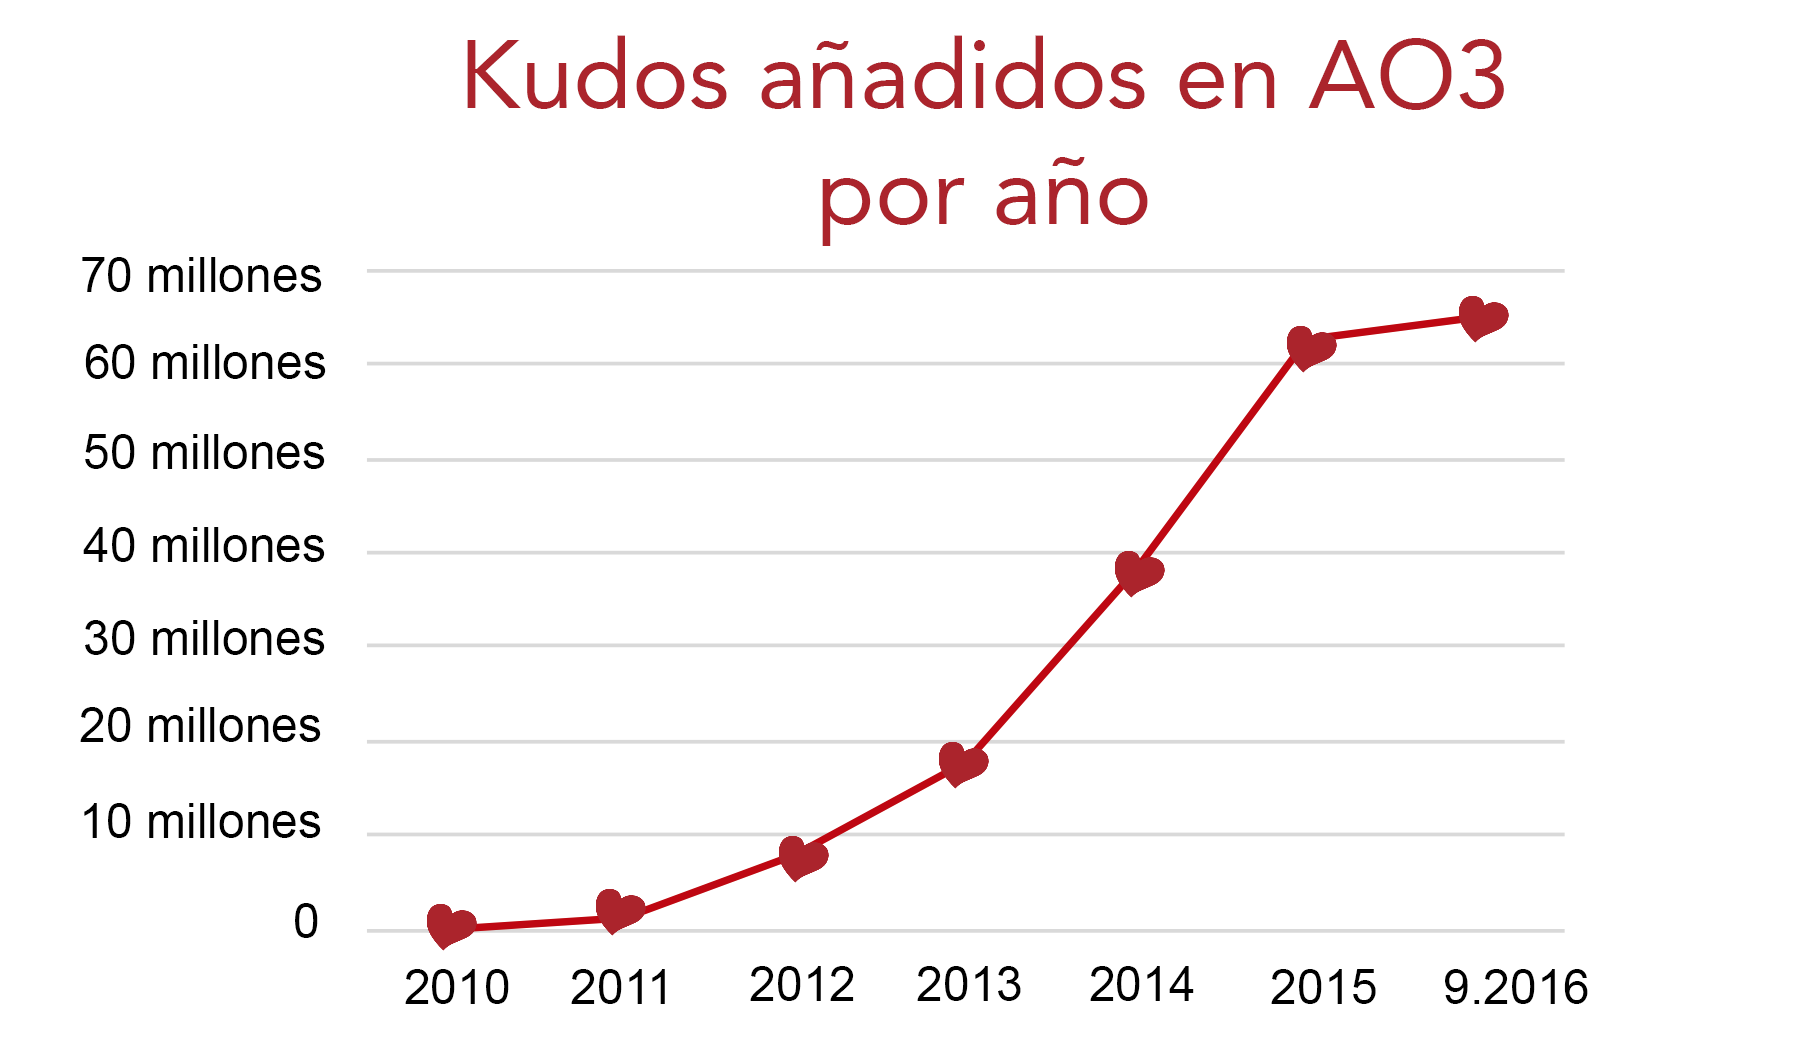 Gráfico de crecimiento de kudos en AO3, de cero en 2010 a más de 60 millones hasta septiembre de 2016.